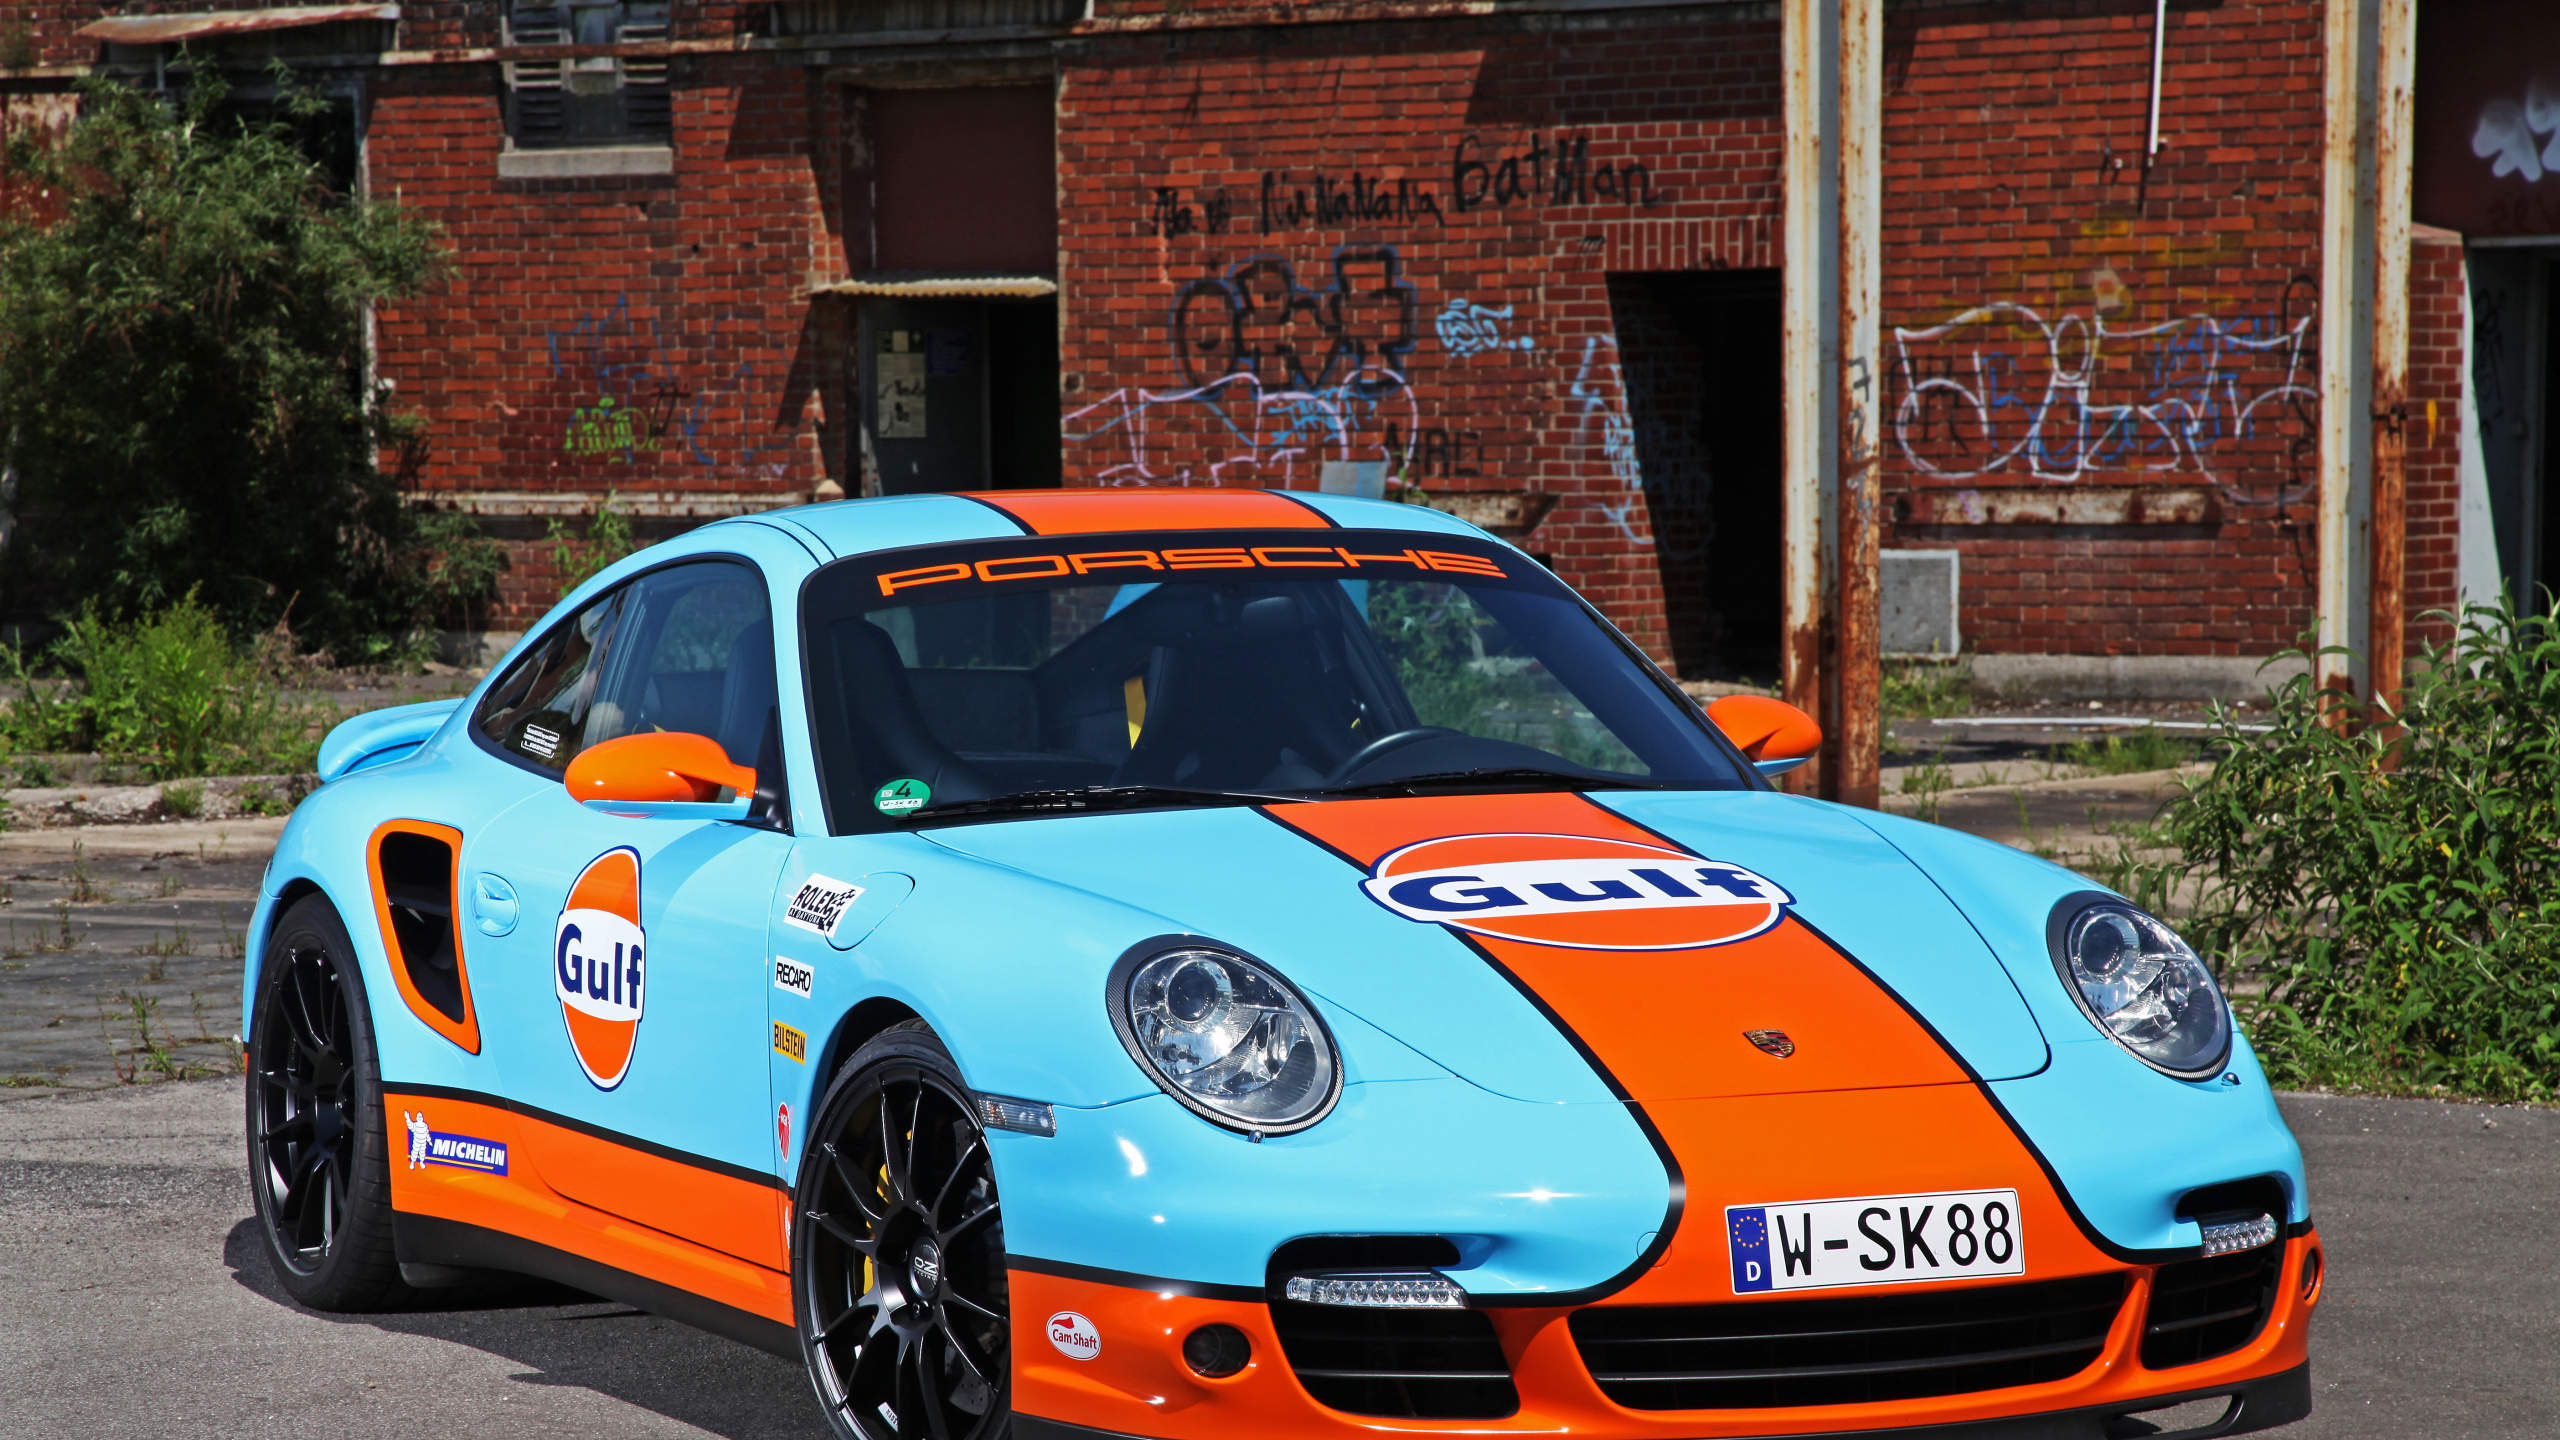 Porsche 911 Bleue et Blanche Garée Près D'un Immeuble en Briques Brunes Pendant la Journée. Wallpaper in 2560x1440 Resolution